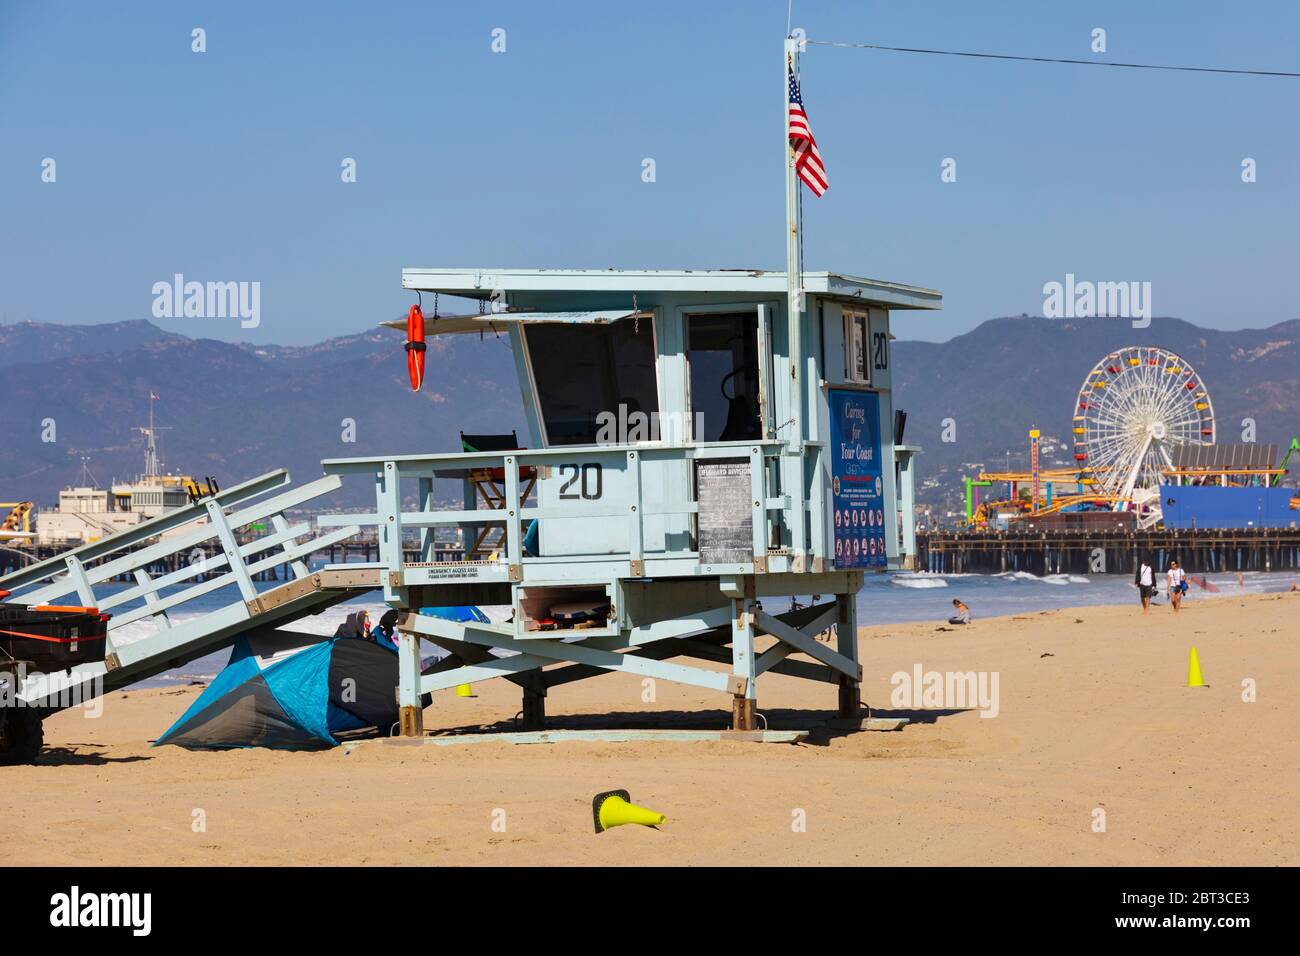 Rettungsschwimmer Hütte am Santa Monica Pier und Strand, Los Angeles, Kalifornien, Vereinigte Staaten von Amerika. Stockfoto